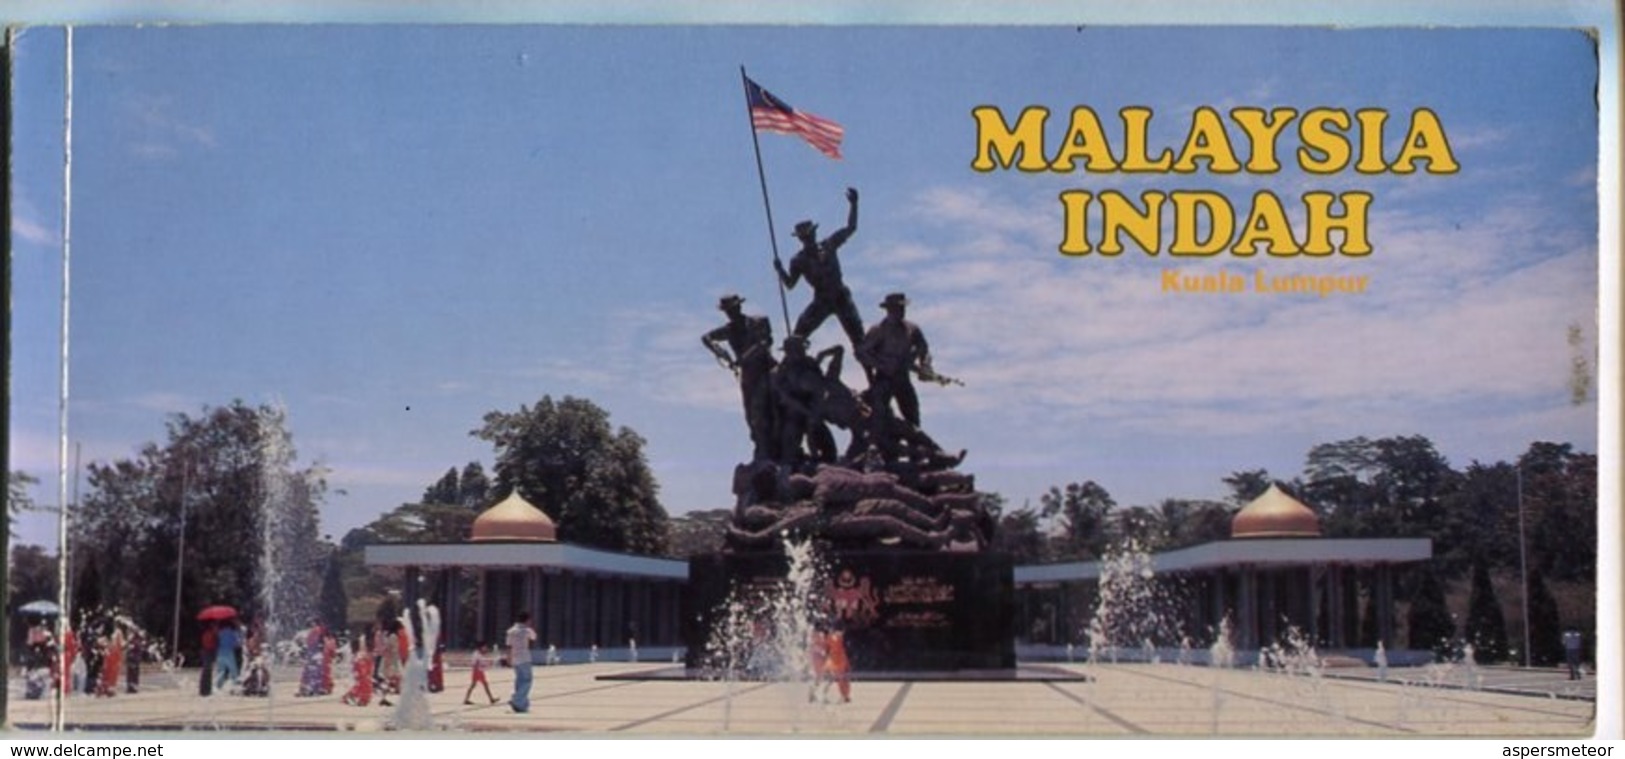 MALAYSIA INDAH - KUALA LUMPUR. 20 POSTALES COLOR. PHOTOSET. CIRCA 1980's -LILHU - Malaysia